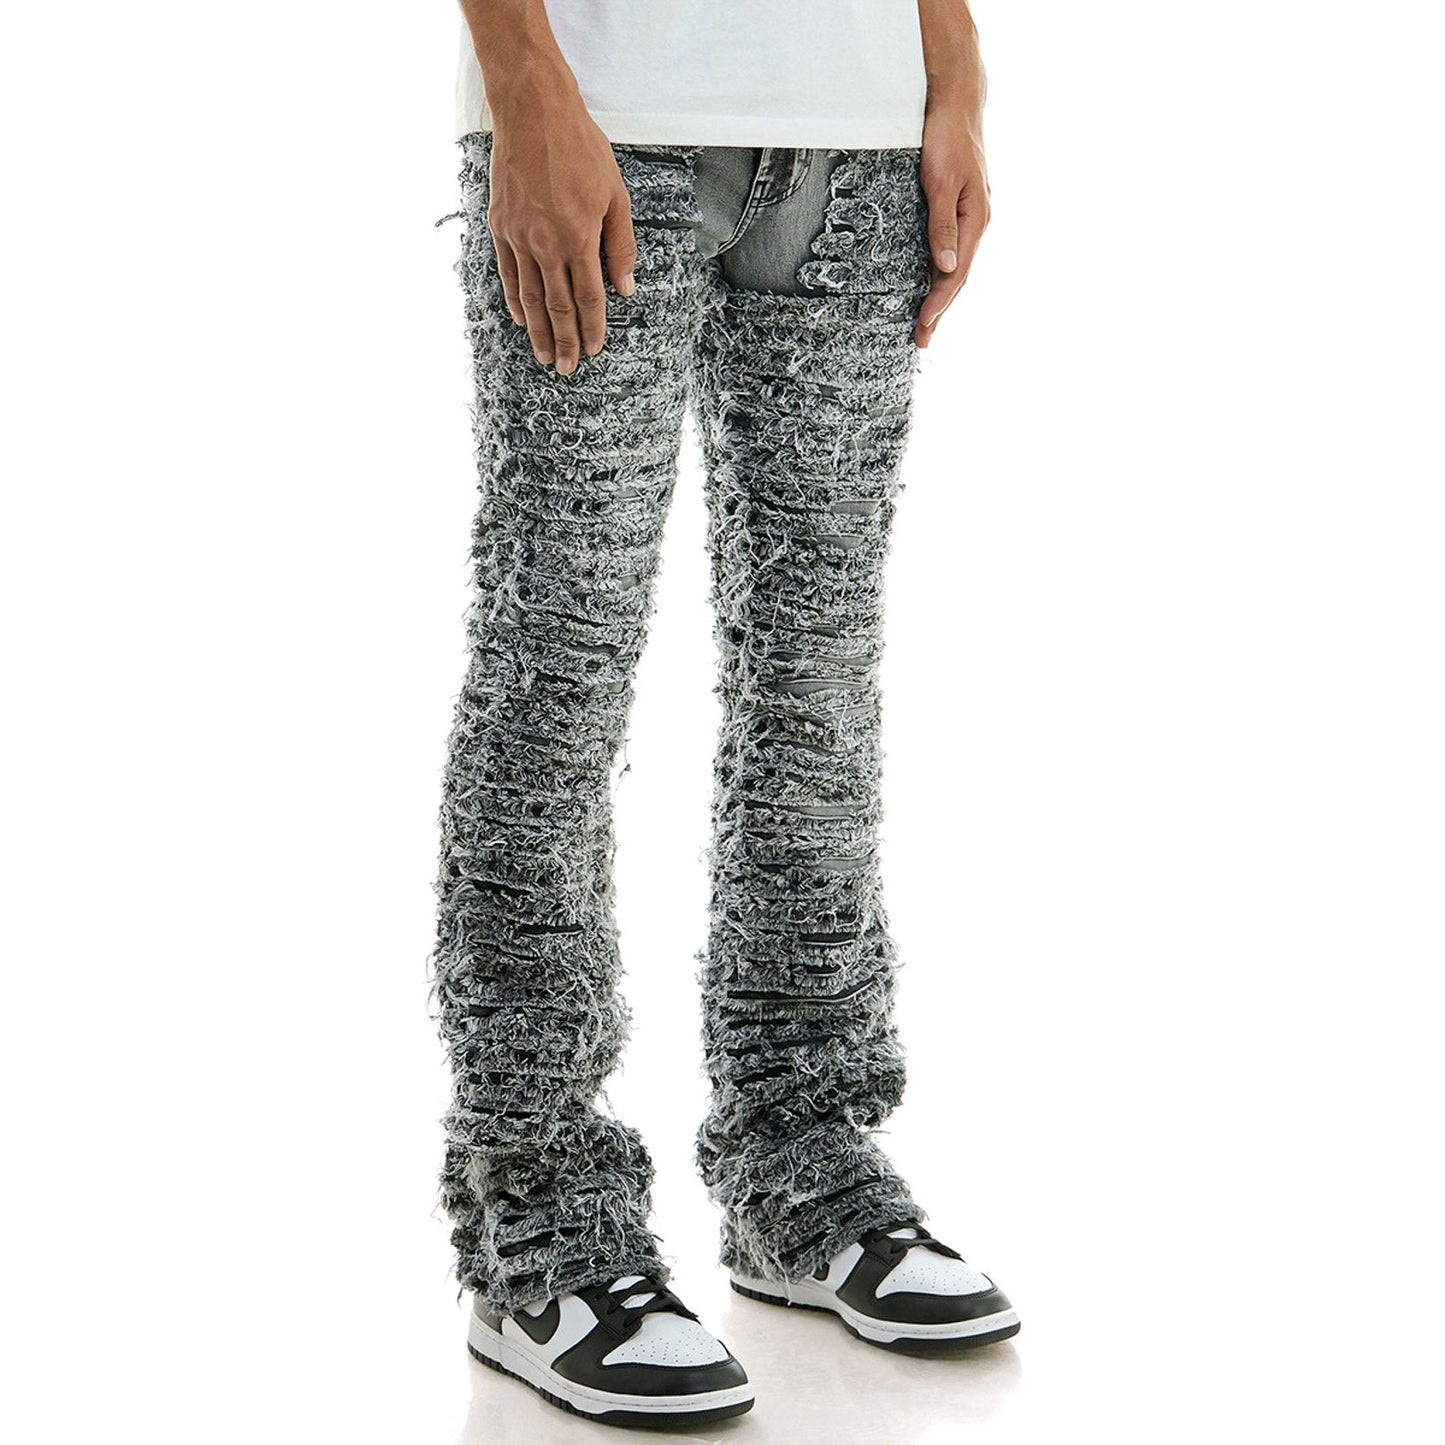 KDNK - Blaze Distressed Jeans - Grey